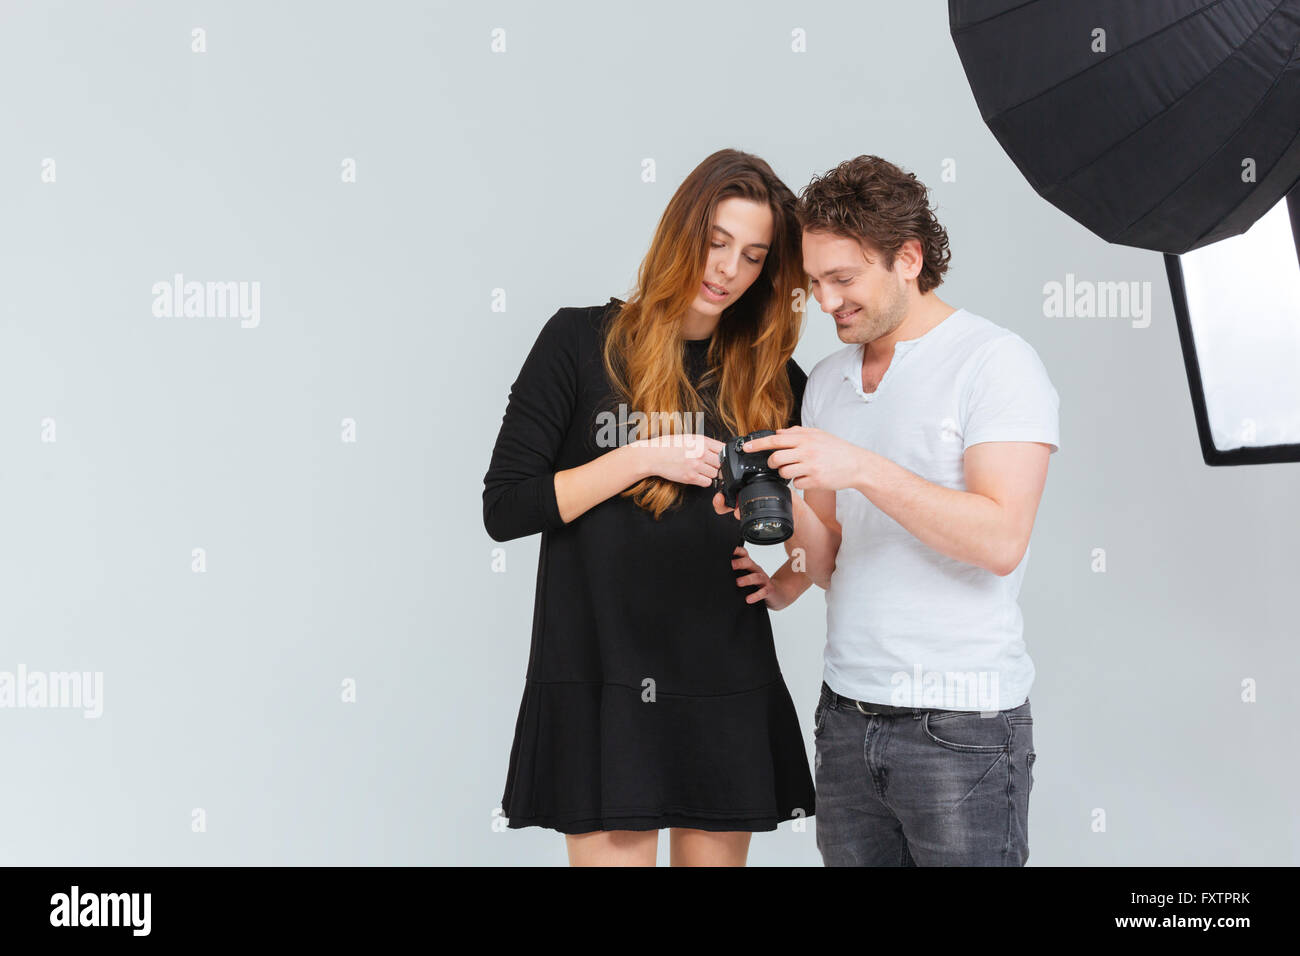 Photographe mâle avec modèle féminin à la recherche sur l'écran de l'appareil photo Banque D'Images